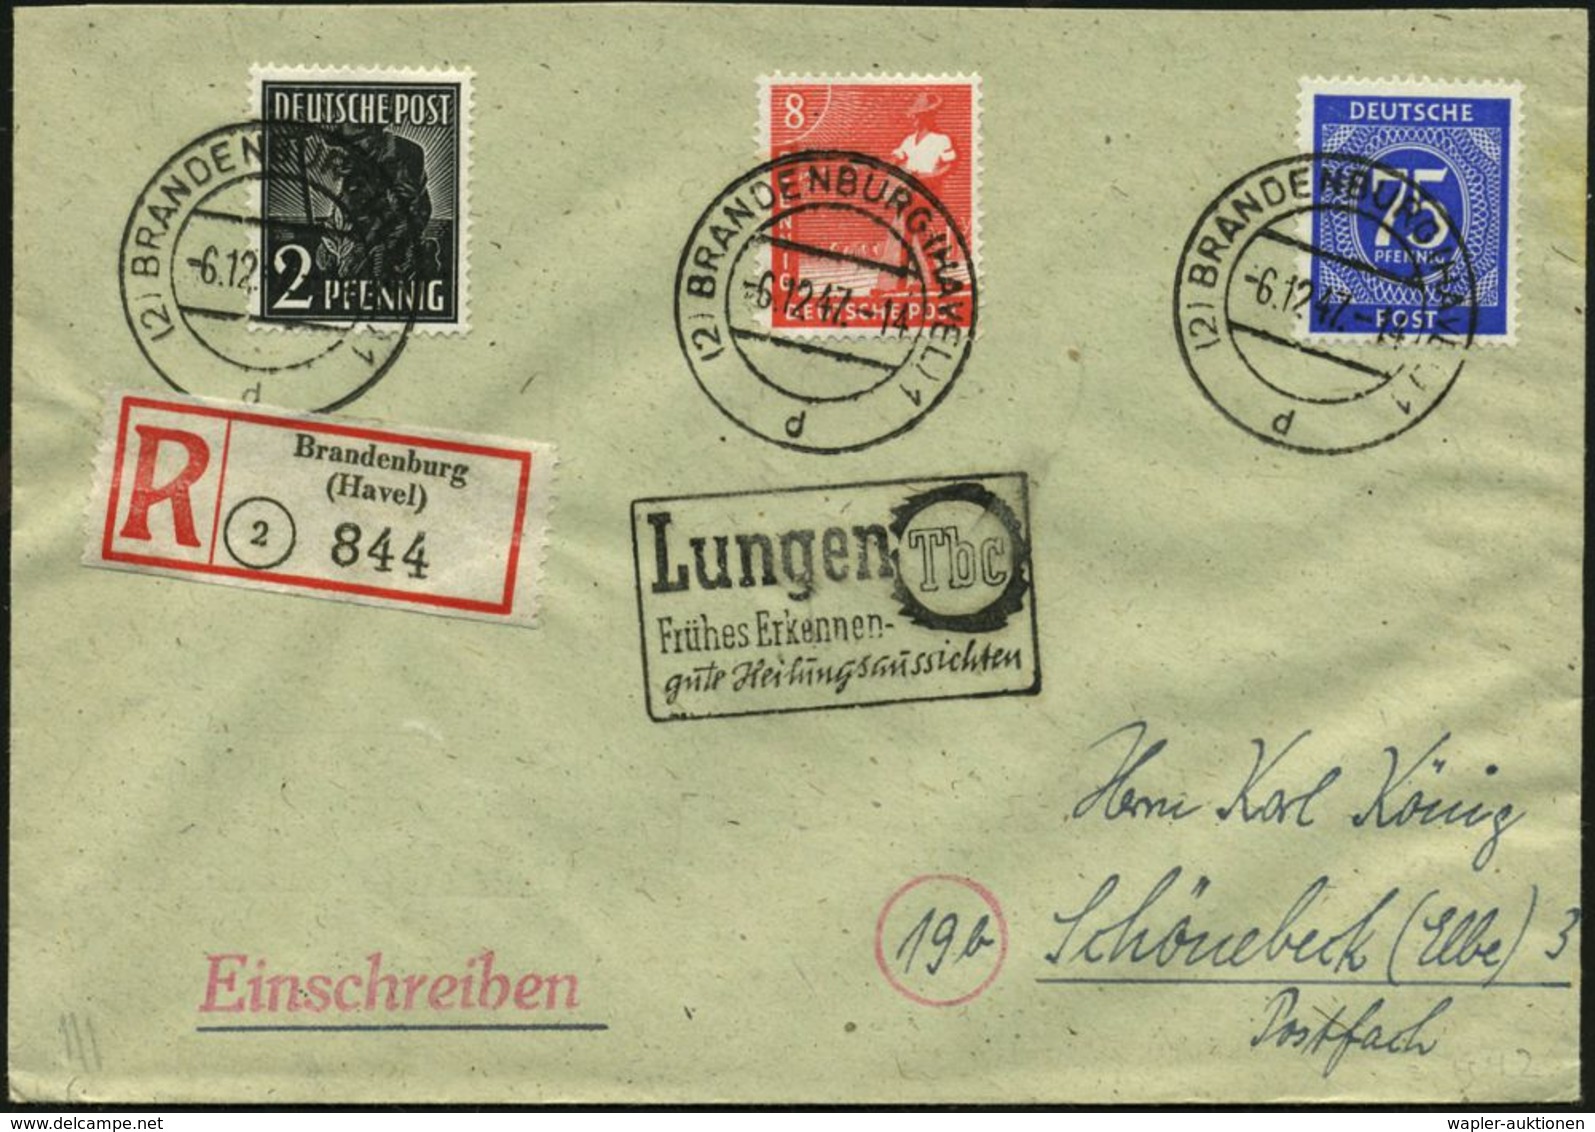 TUBERKULOSE / TBC-VORSORGE : (2) BRANDENBURG (HAVEL) 1/ D 1947 (6.12.) 2K-Steg + Sehr Seltener Hand-SerienSt (Ra.3): Lun - Maladies